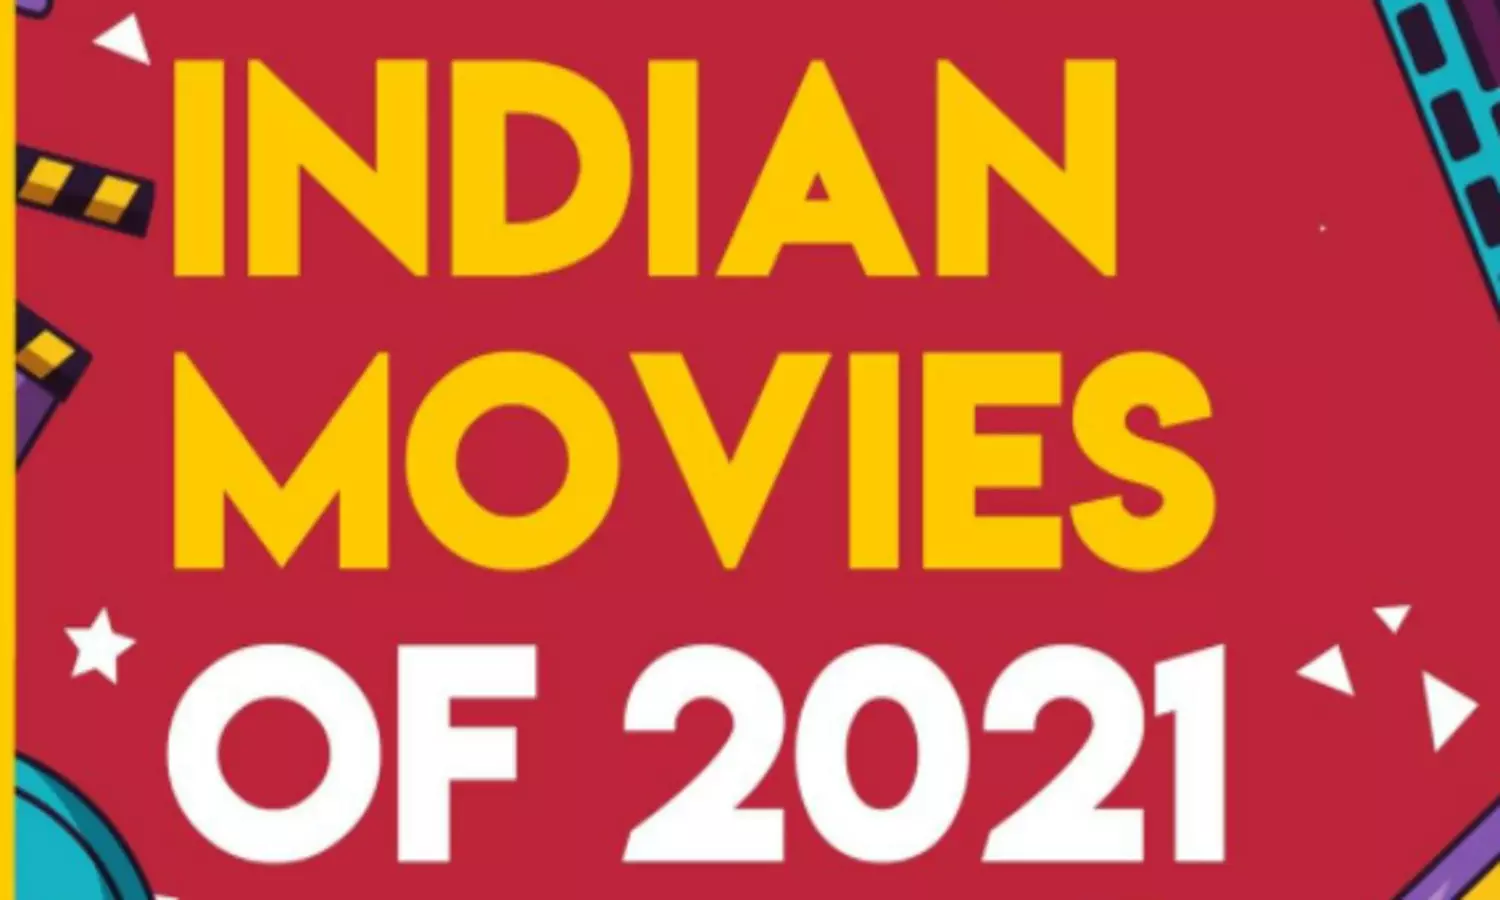 Bollywood Movies Of 2021: इन फिल्मों ने किया दर्शकों का मनोरंजन, तो कुछ रहीं पर्दे पर फेल